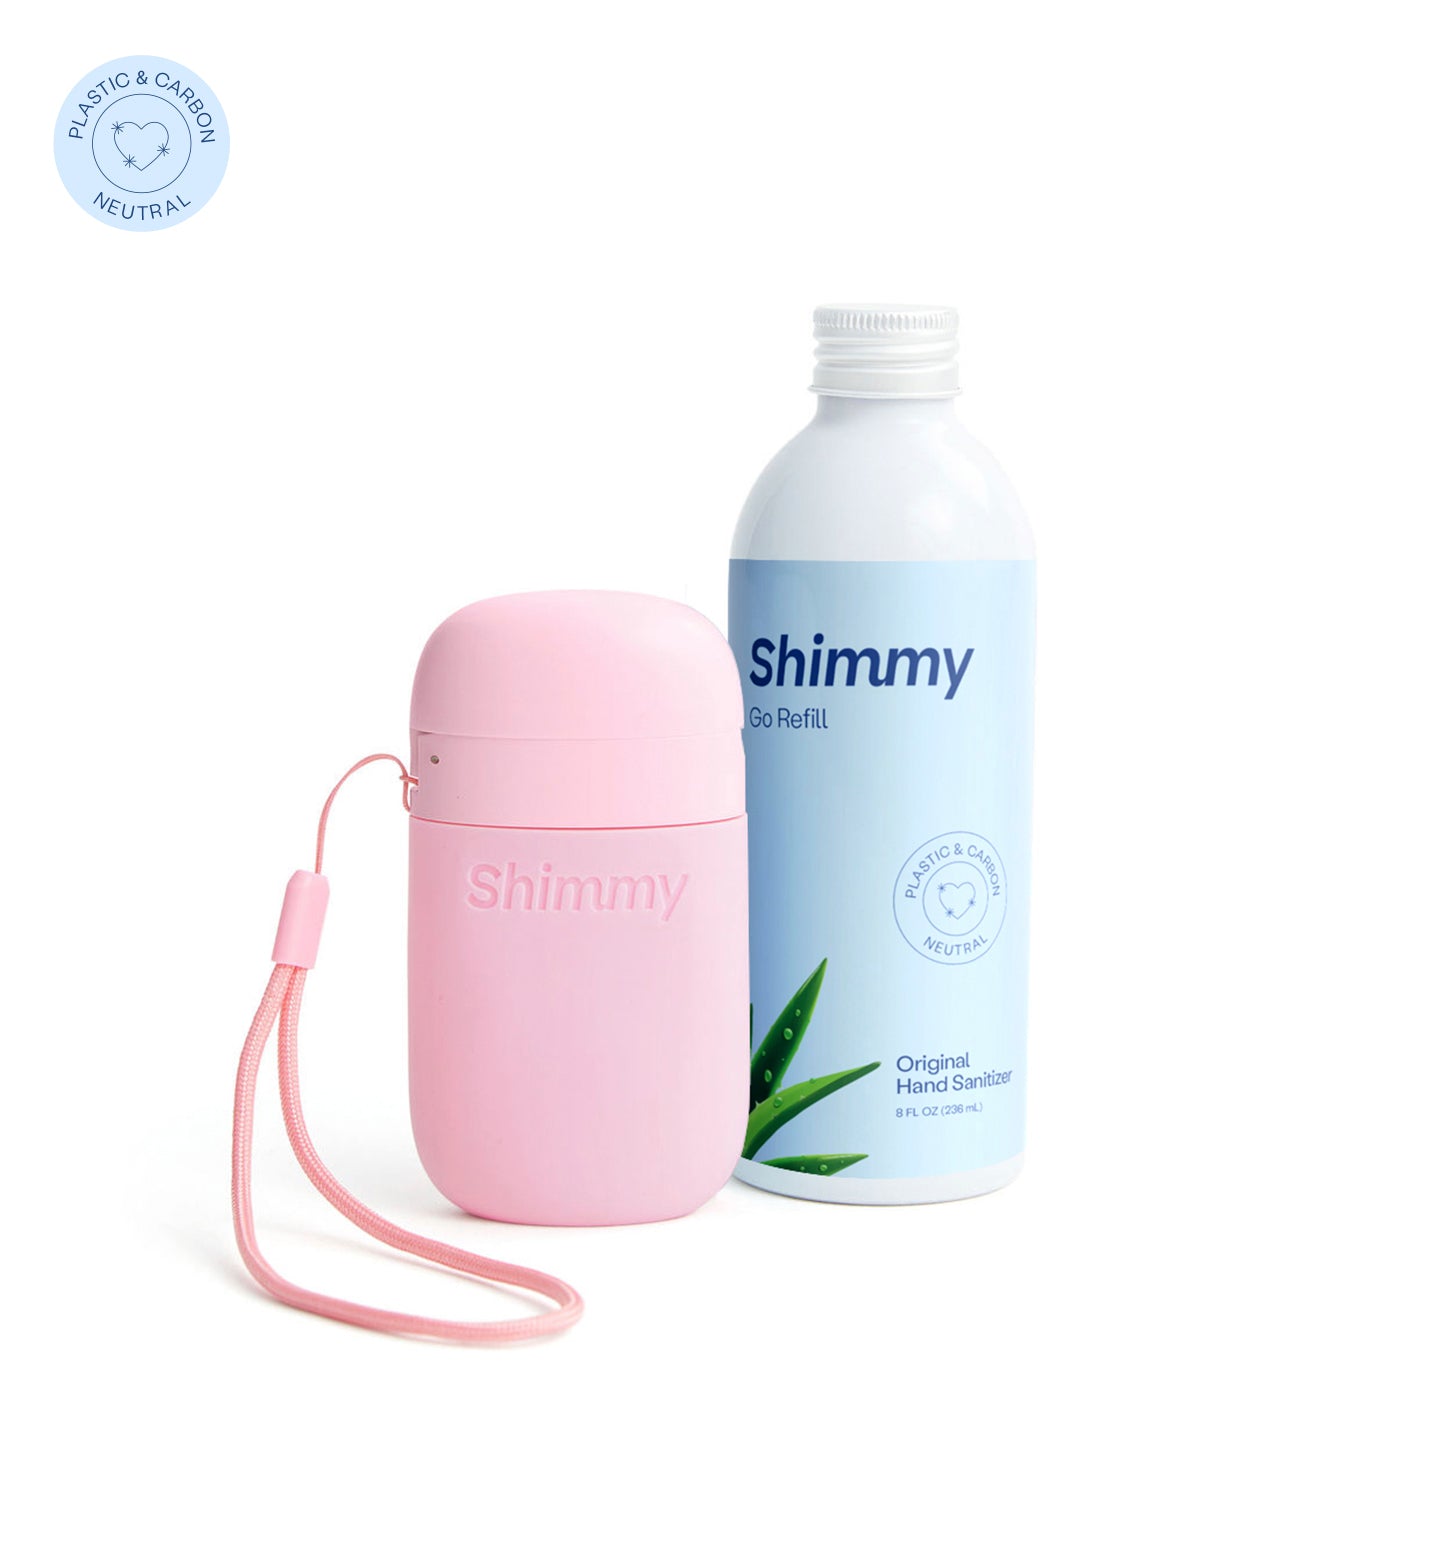 Shimmy Go Portable Hand Sanitizer Dispenser Soft Pink + Original Hand Sanitizer [40734758273215] - 